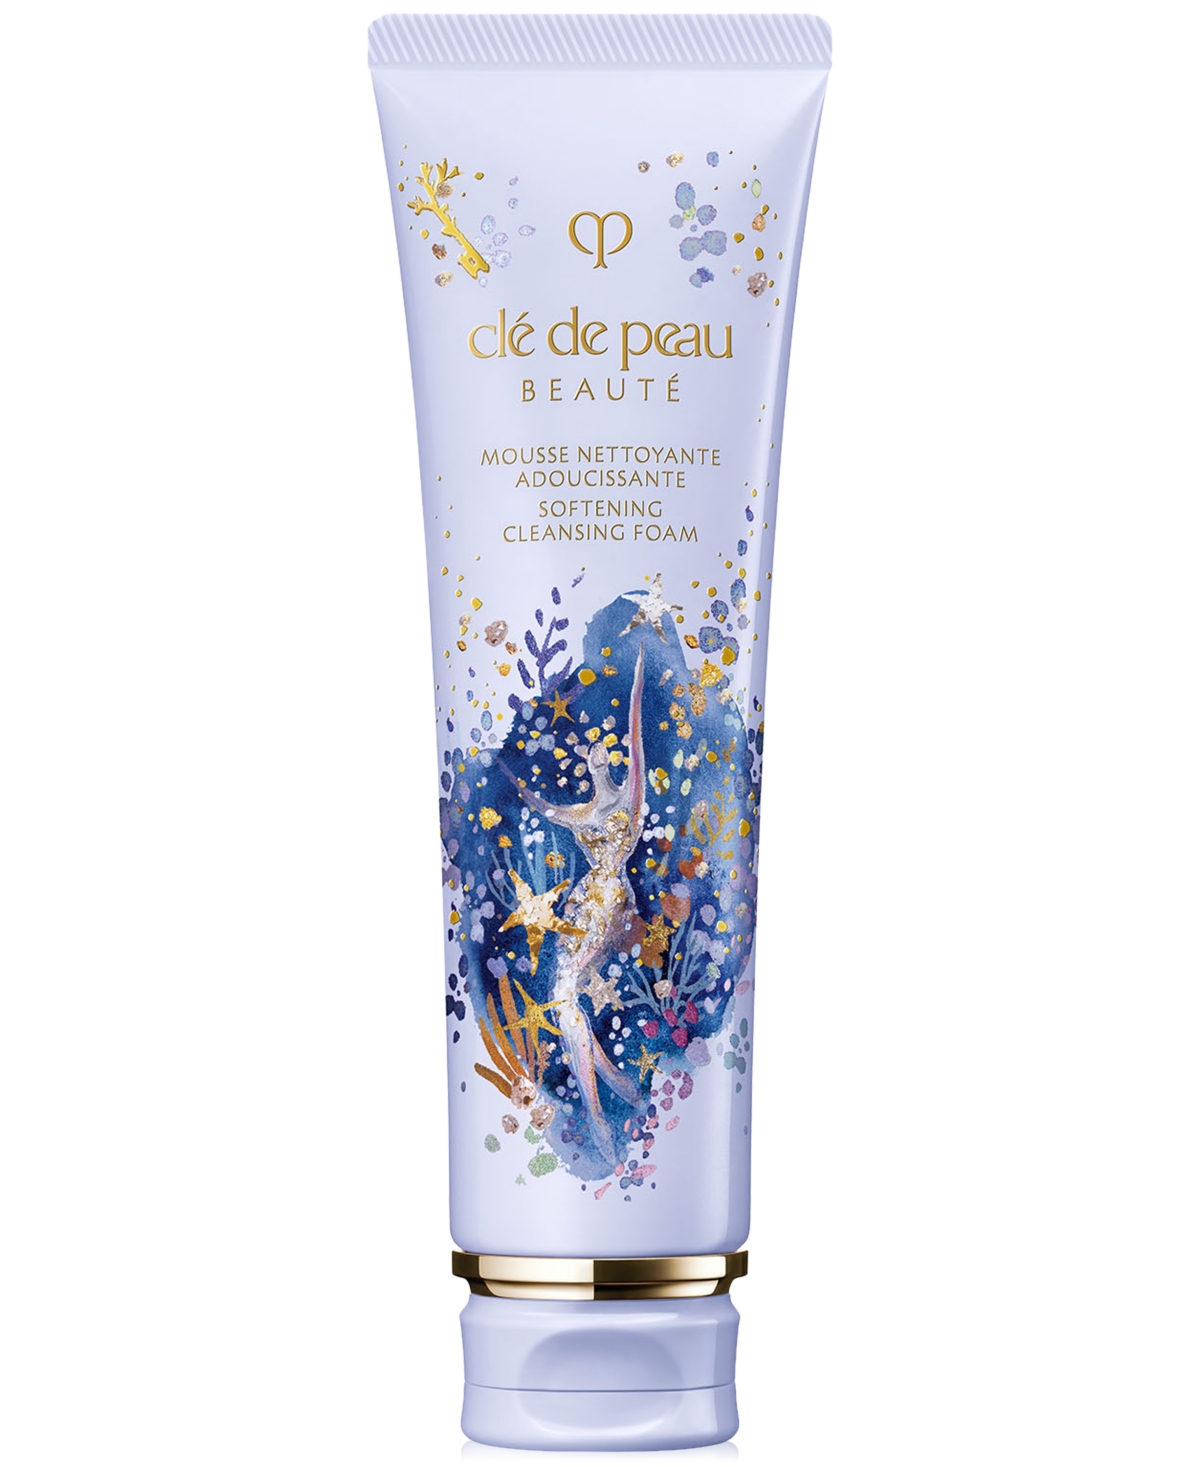 Clé De Peau Beauté Cle De Peau Beaute Limited-edition Softening Cleansing Foam